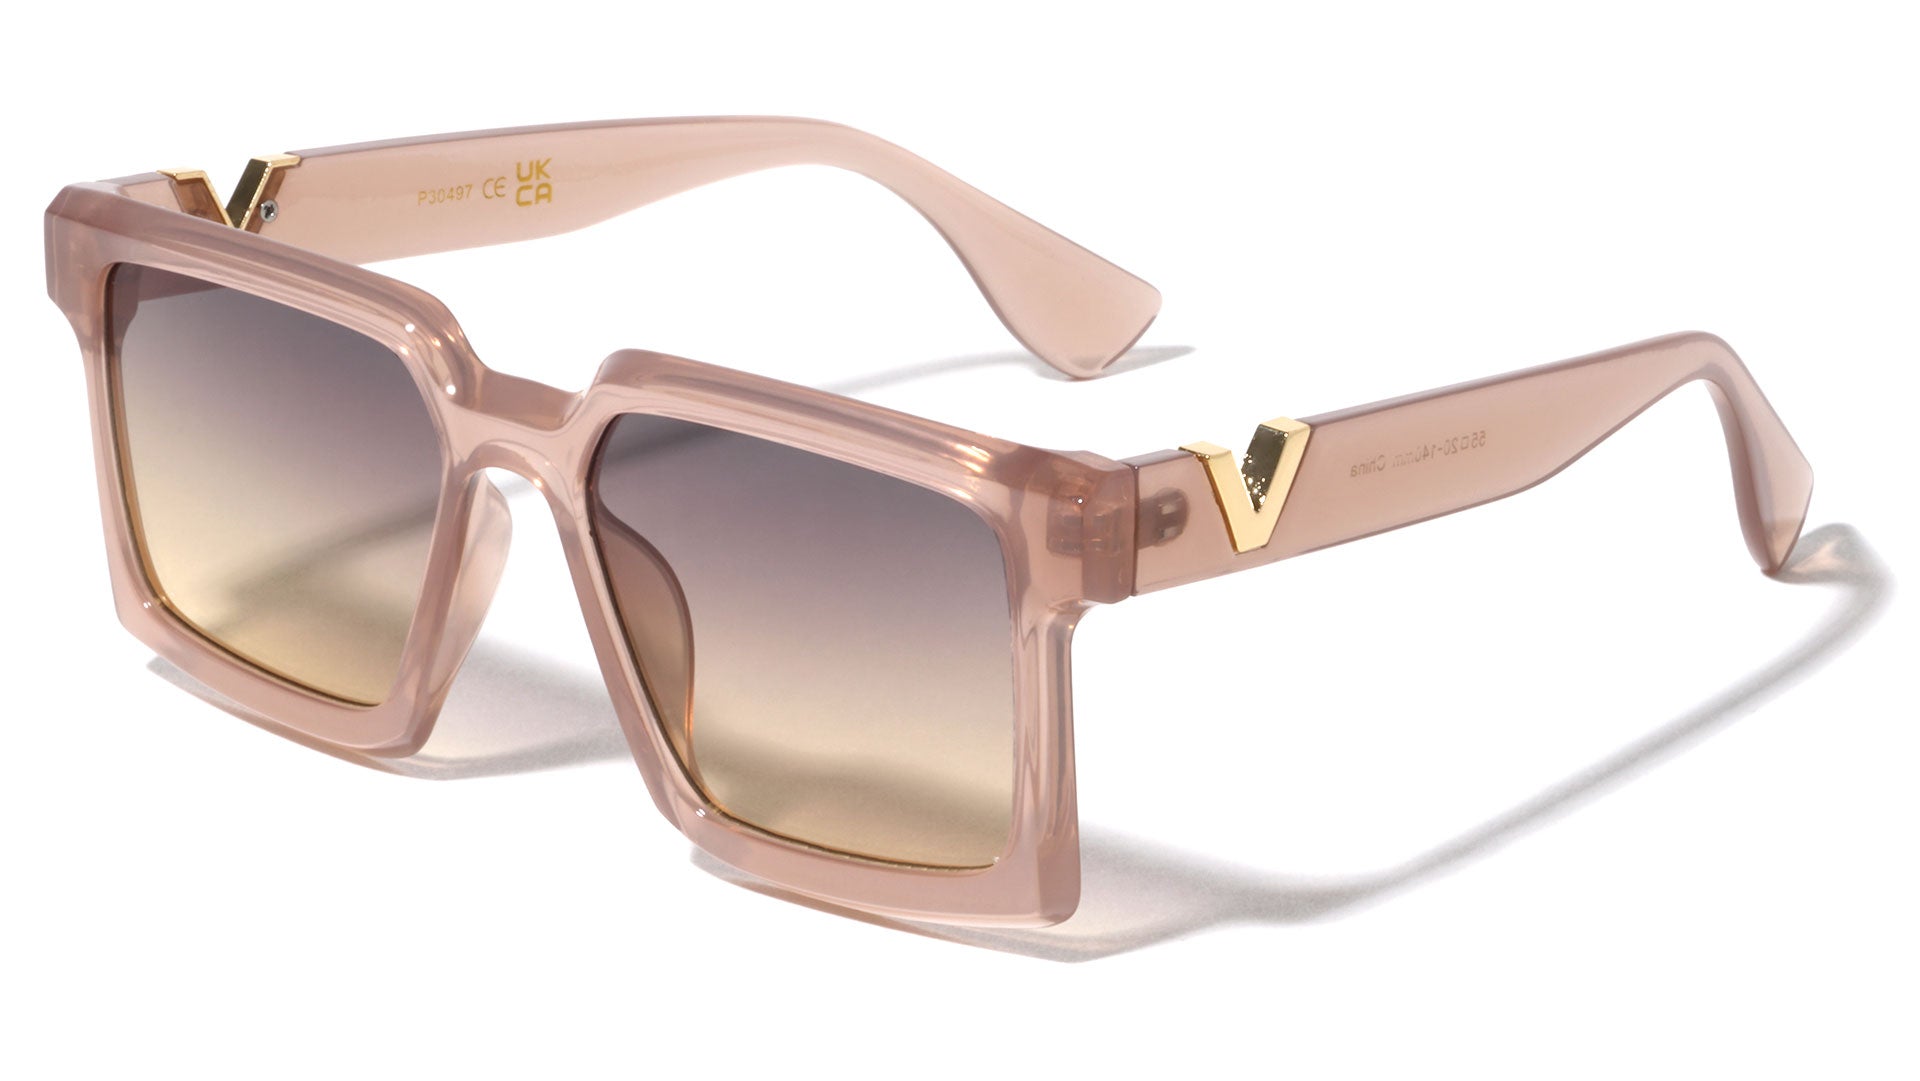 New Personalized Sunglasses For Men, Square Millionaire Sunglasses